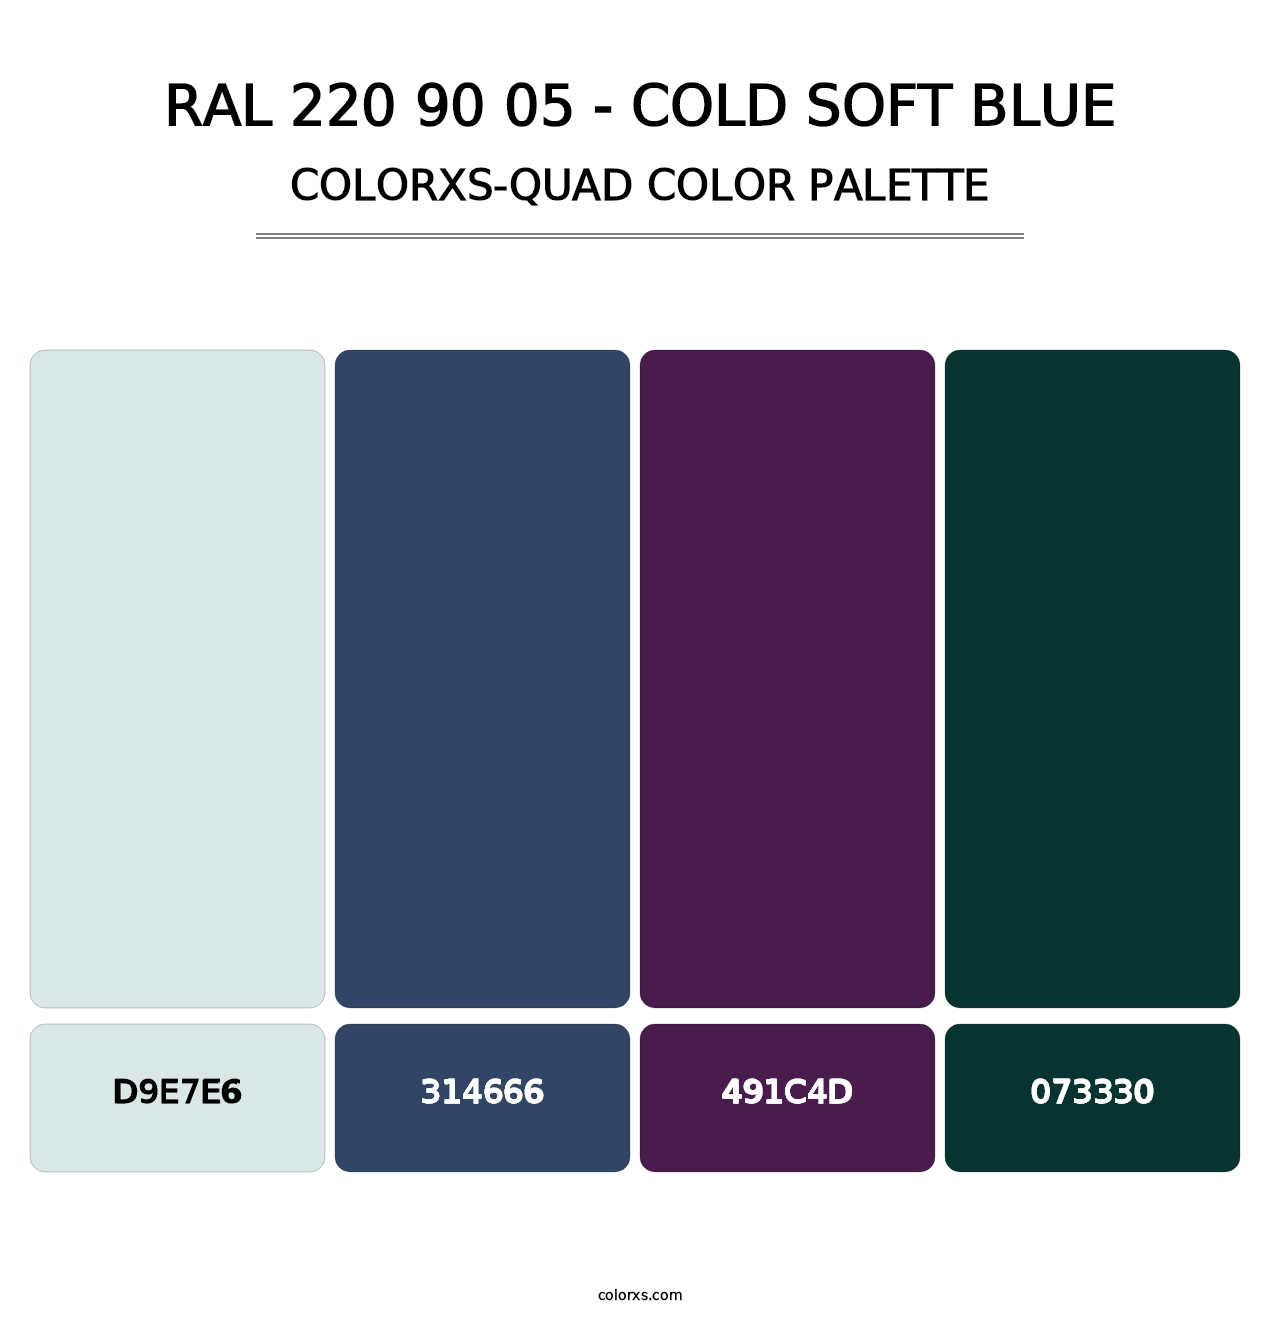 RAL 220 90 05 - Cold Soft Blue - Colorxs Quad Palette